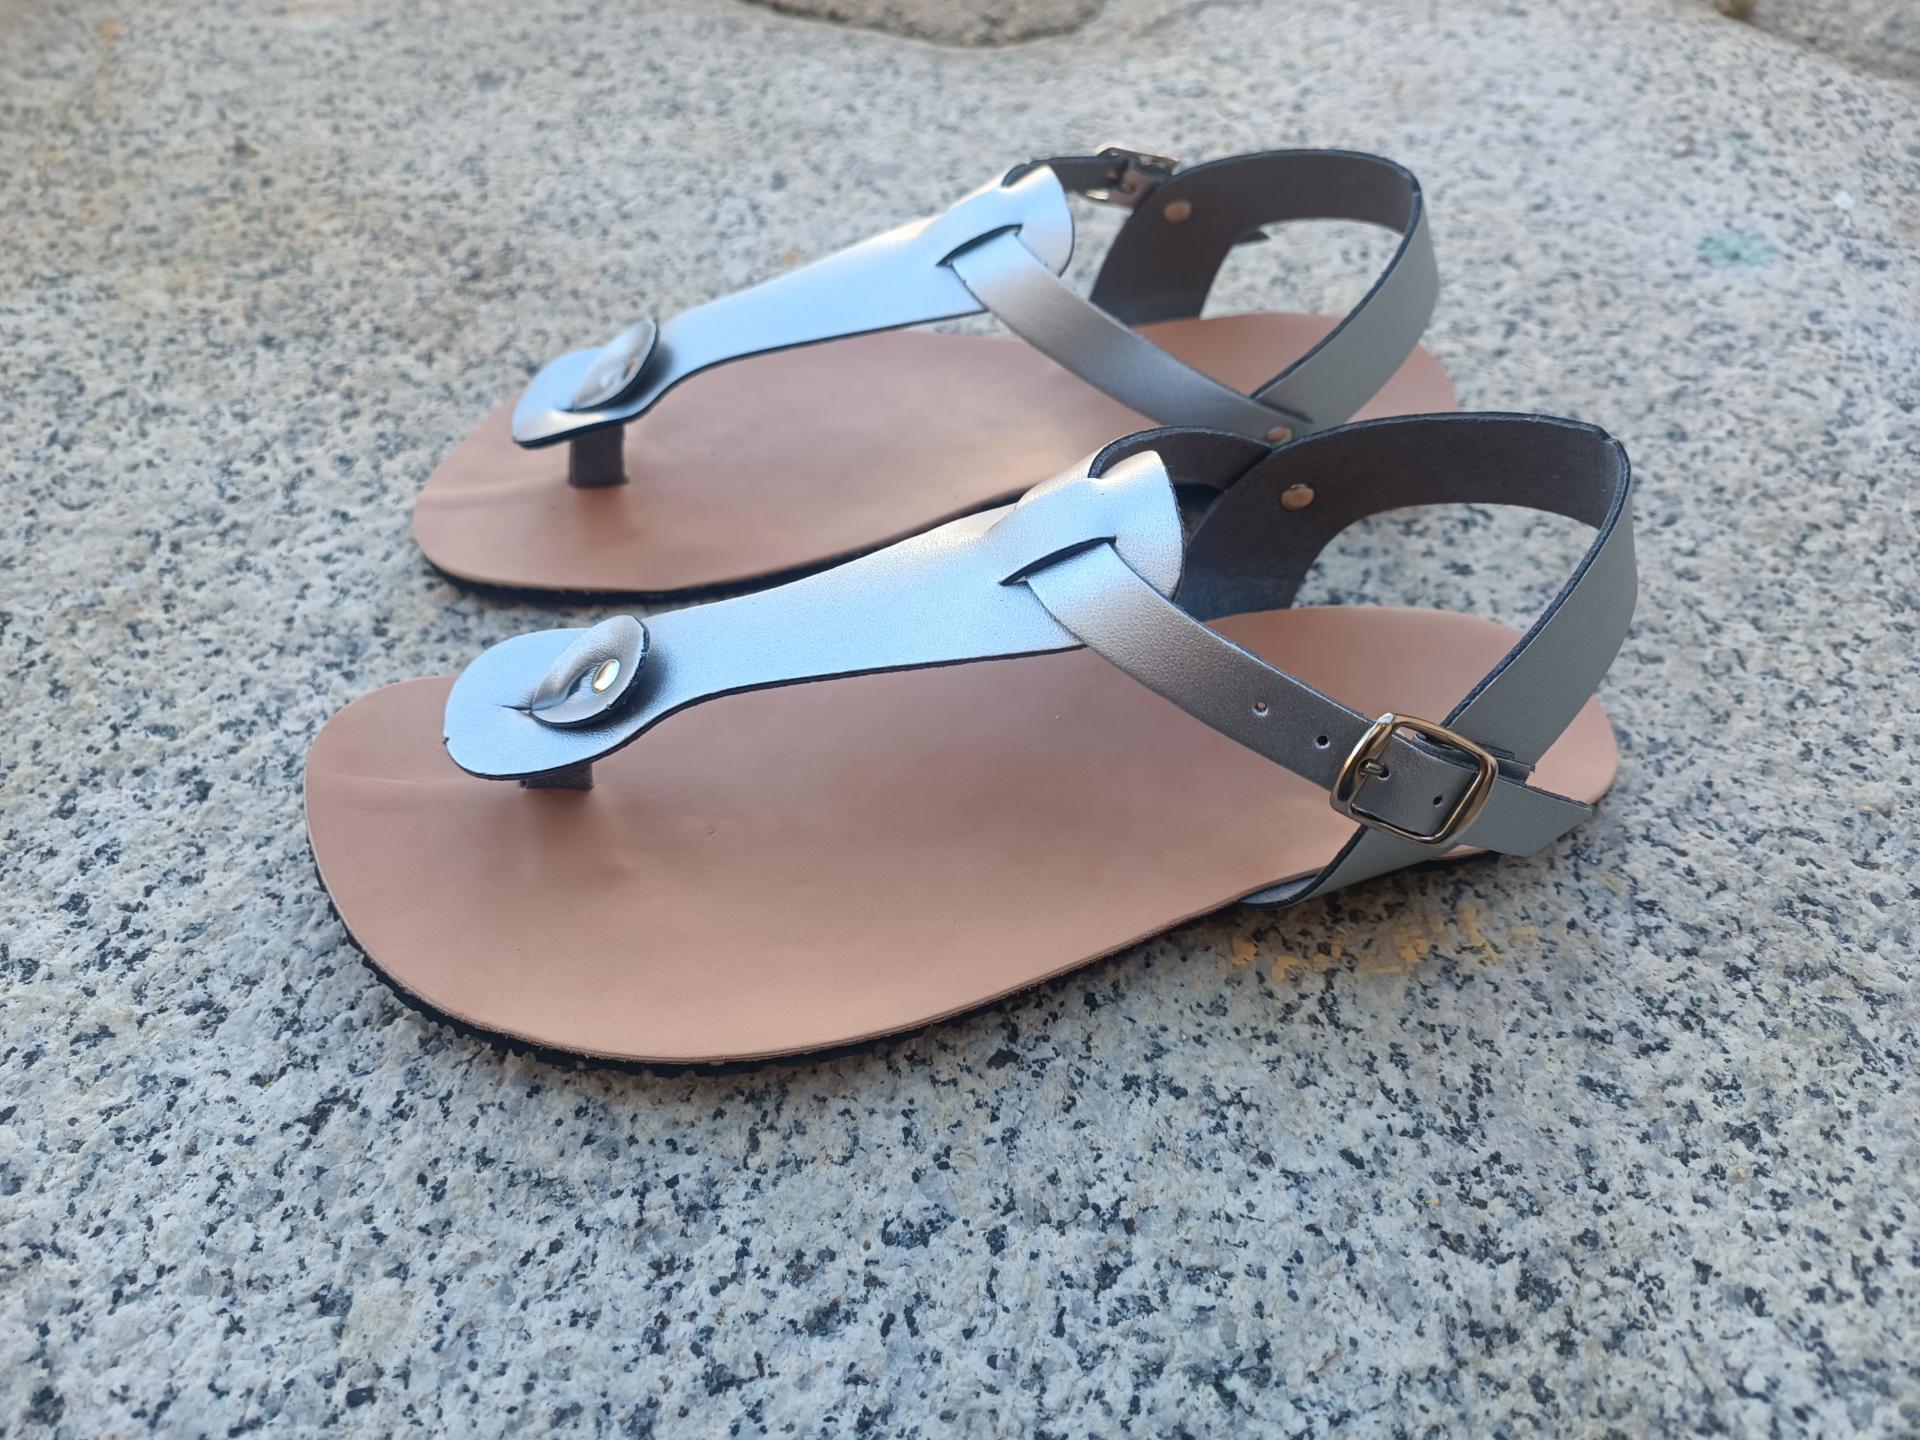 BAREFOOT PARANÁ plata, sandalias para mujer y hombre, calzado descalzo, sandalias veganas, eco-friendly, barefoot.